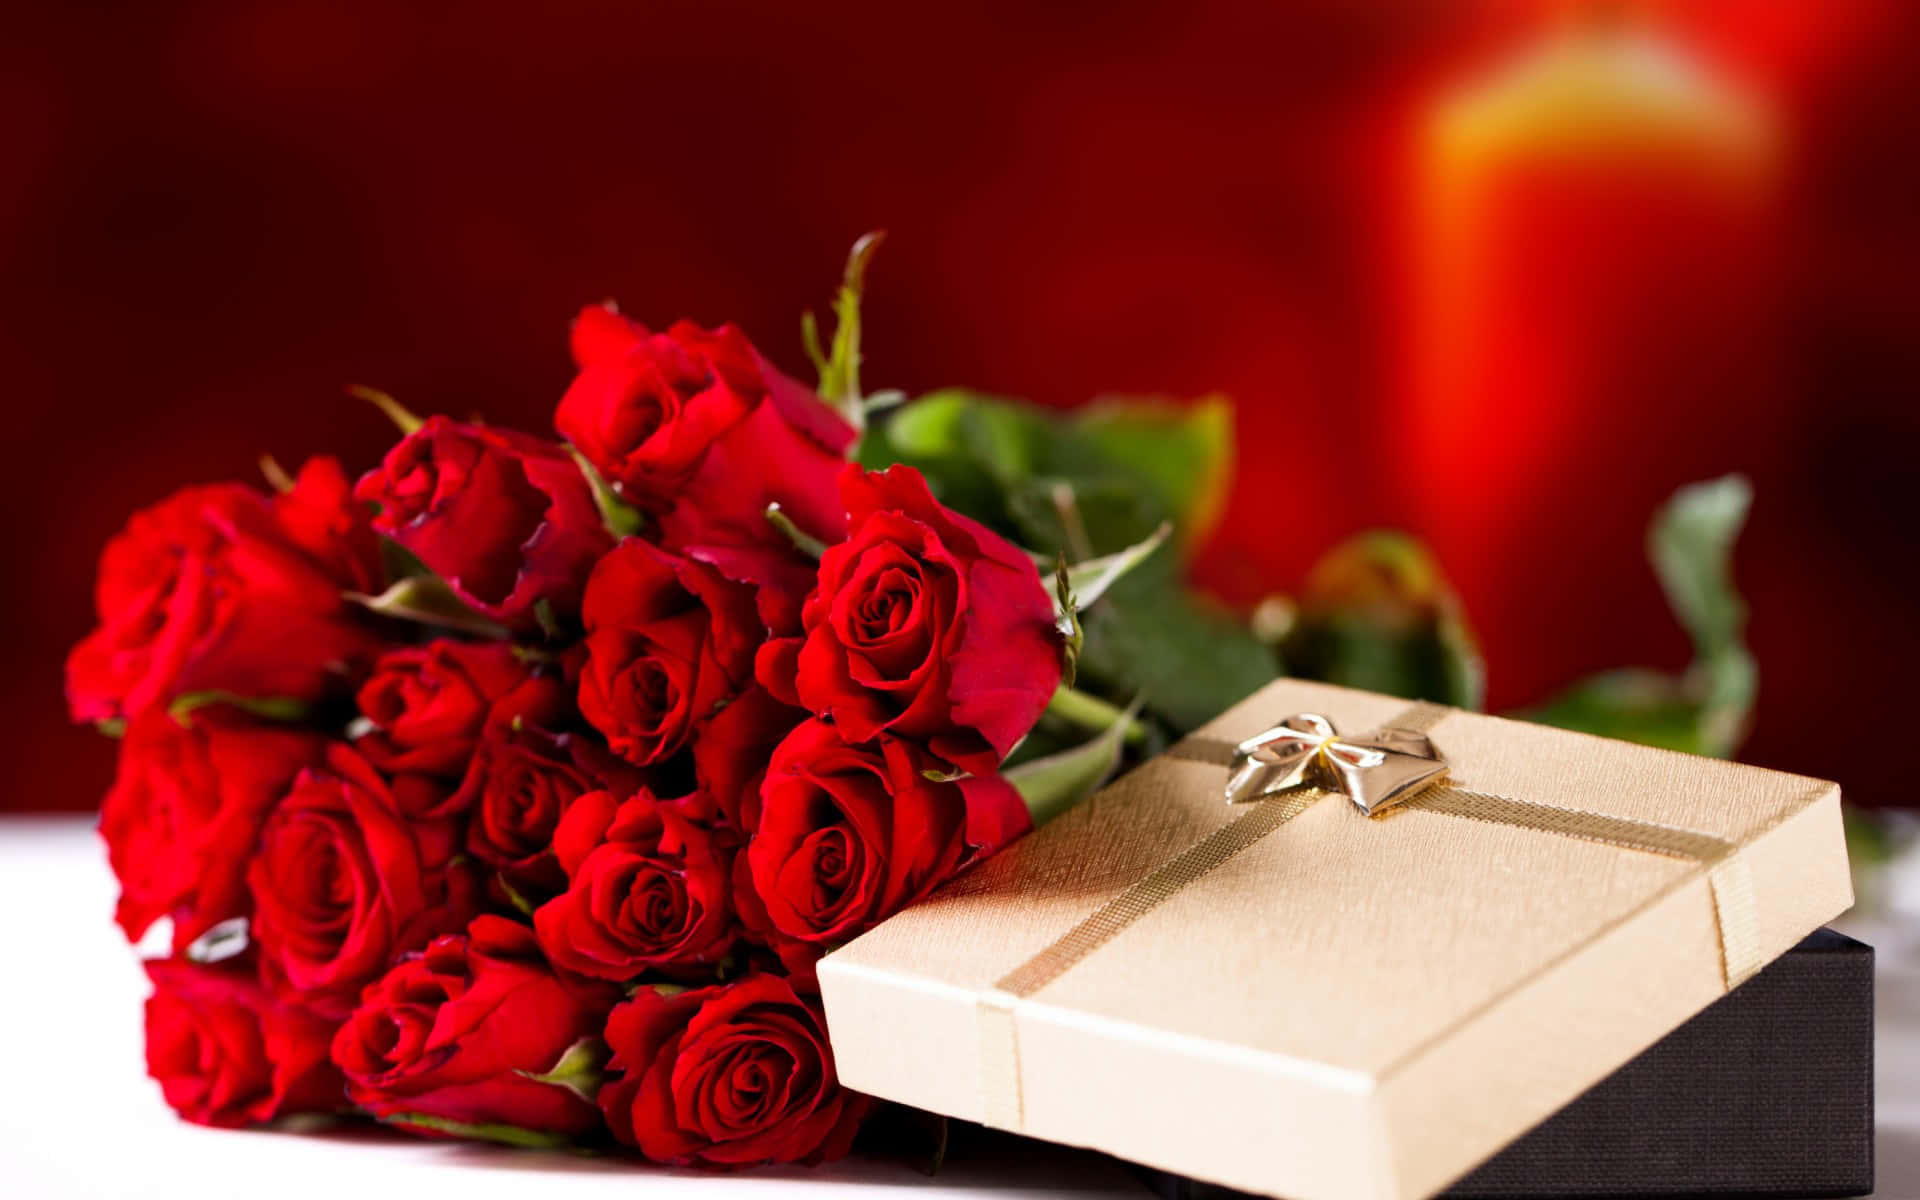 Romantic Rose Bouquet Pictures